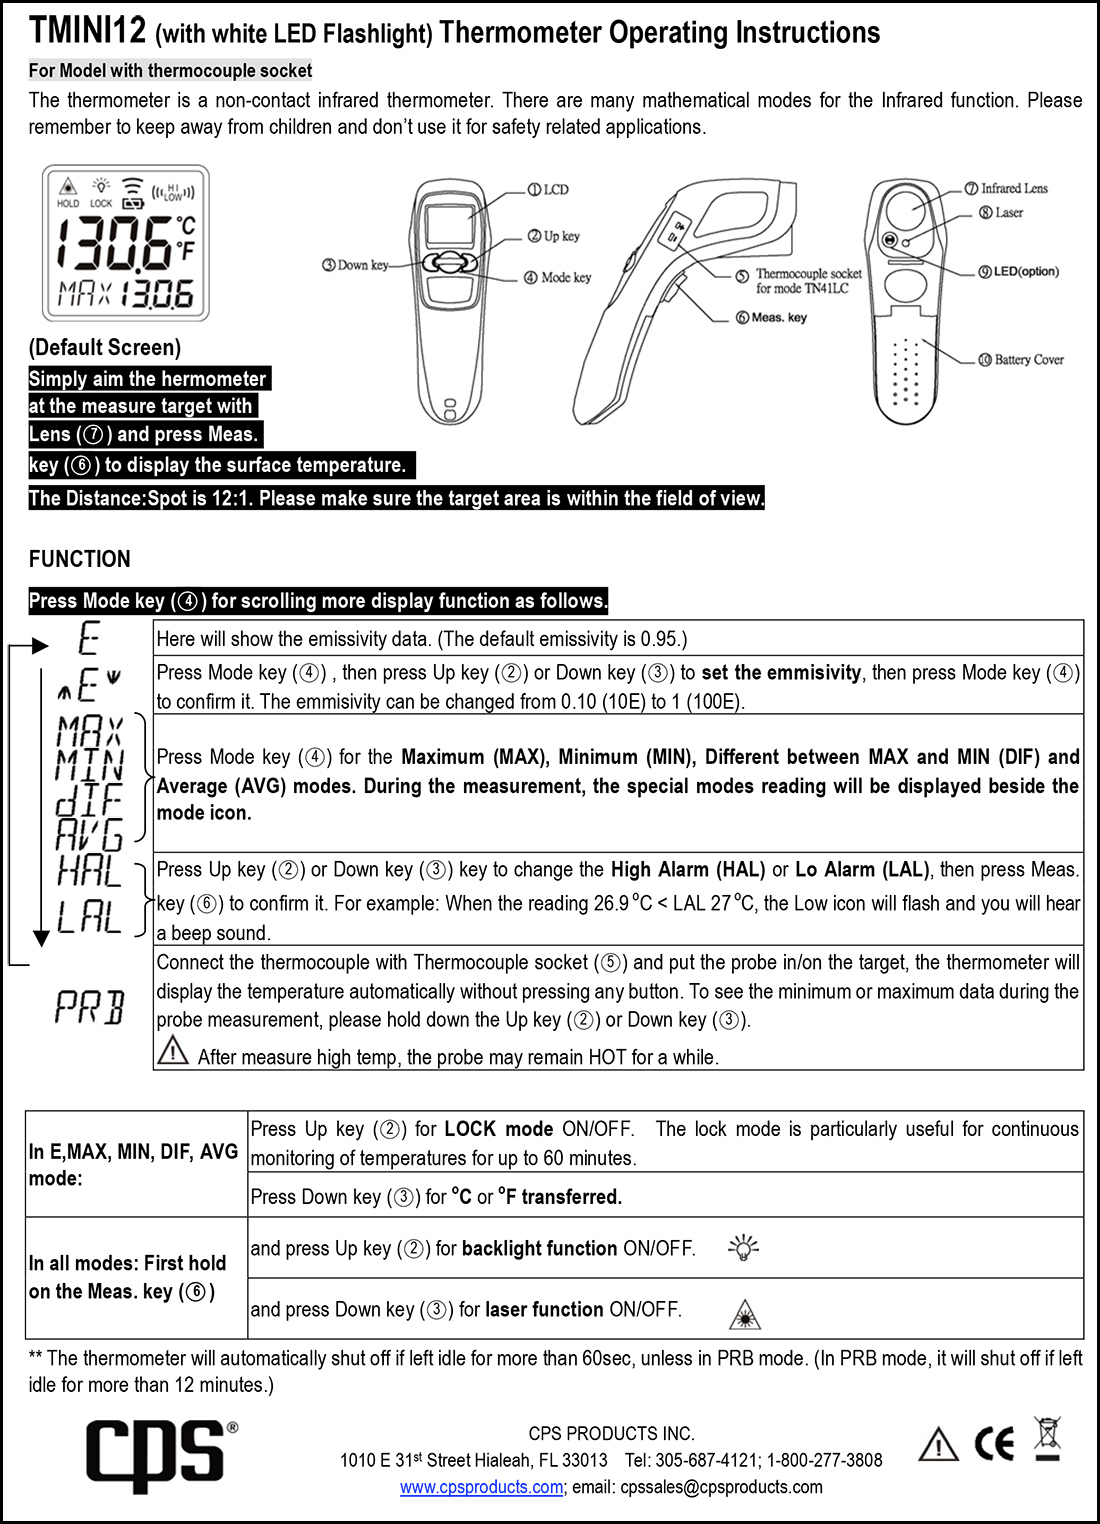 Инфракрасный термометр CPS TMINI12 (Инструкция по эксплуатации)